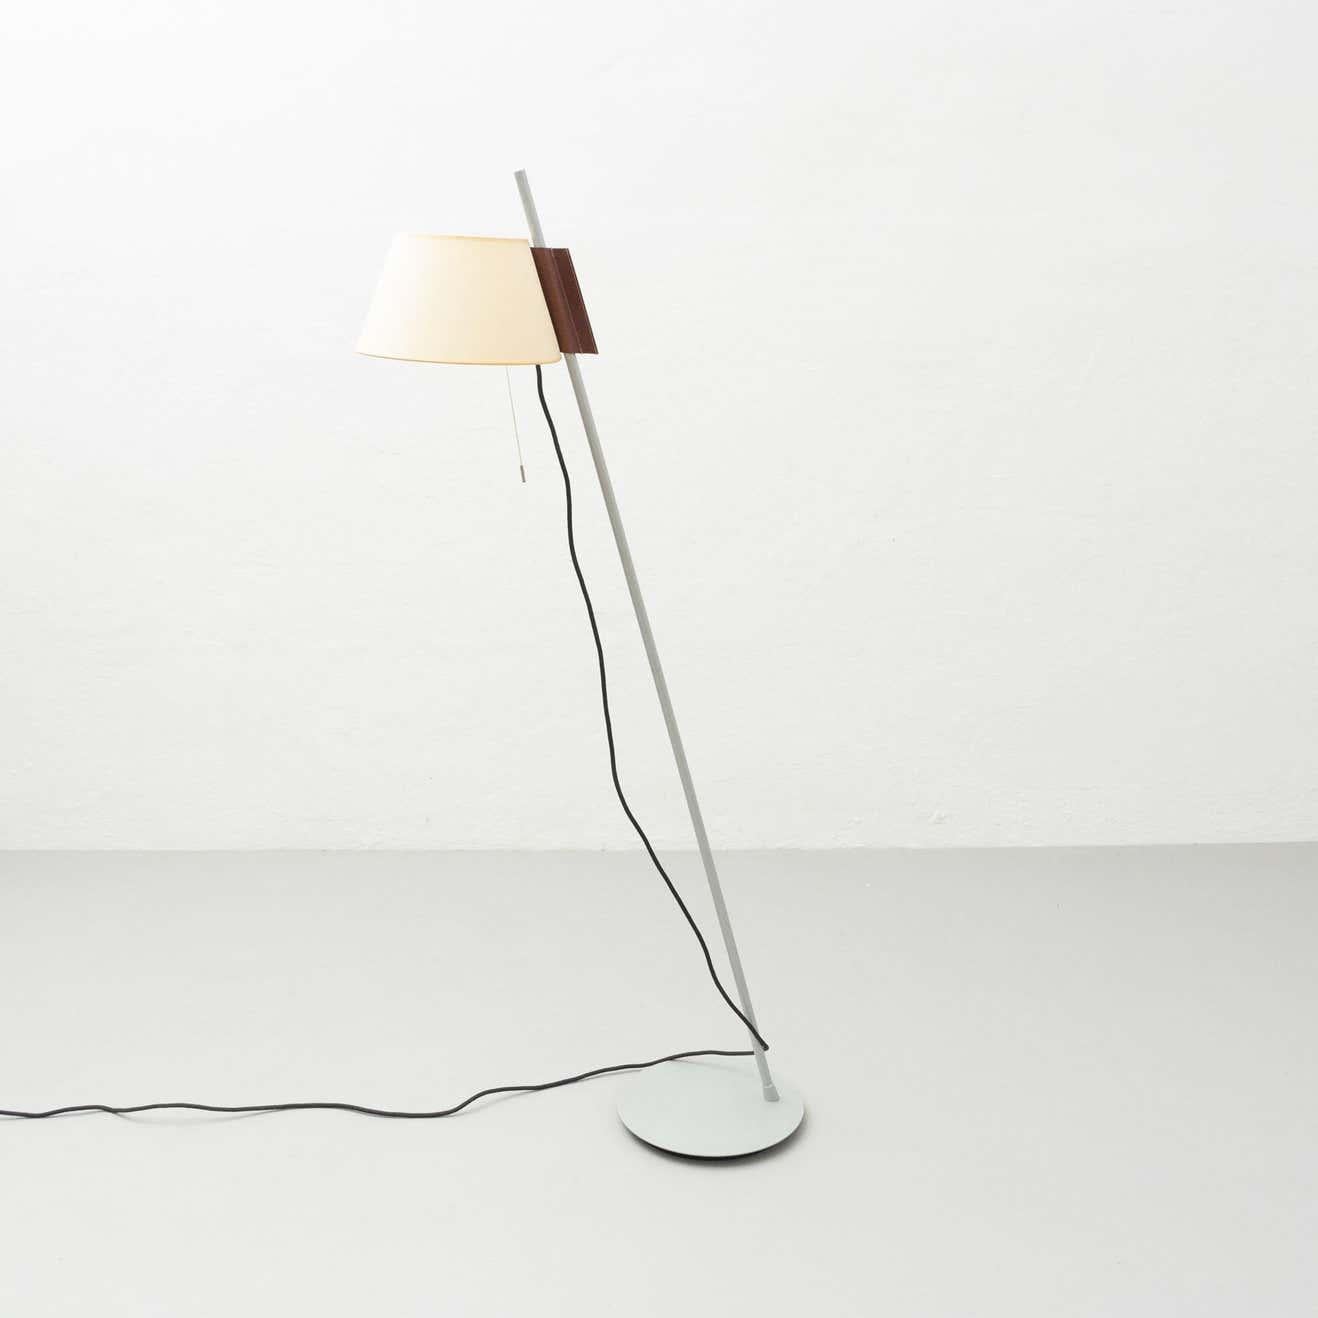 Estudio Blanch Simplisima Floor Lamp by Metalarte, circa 1970 In Good Condition For Sale In Barcelona, Barcelona